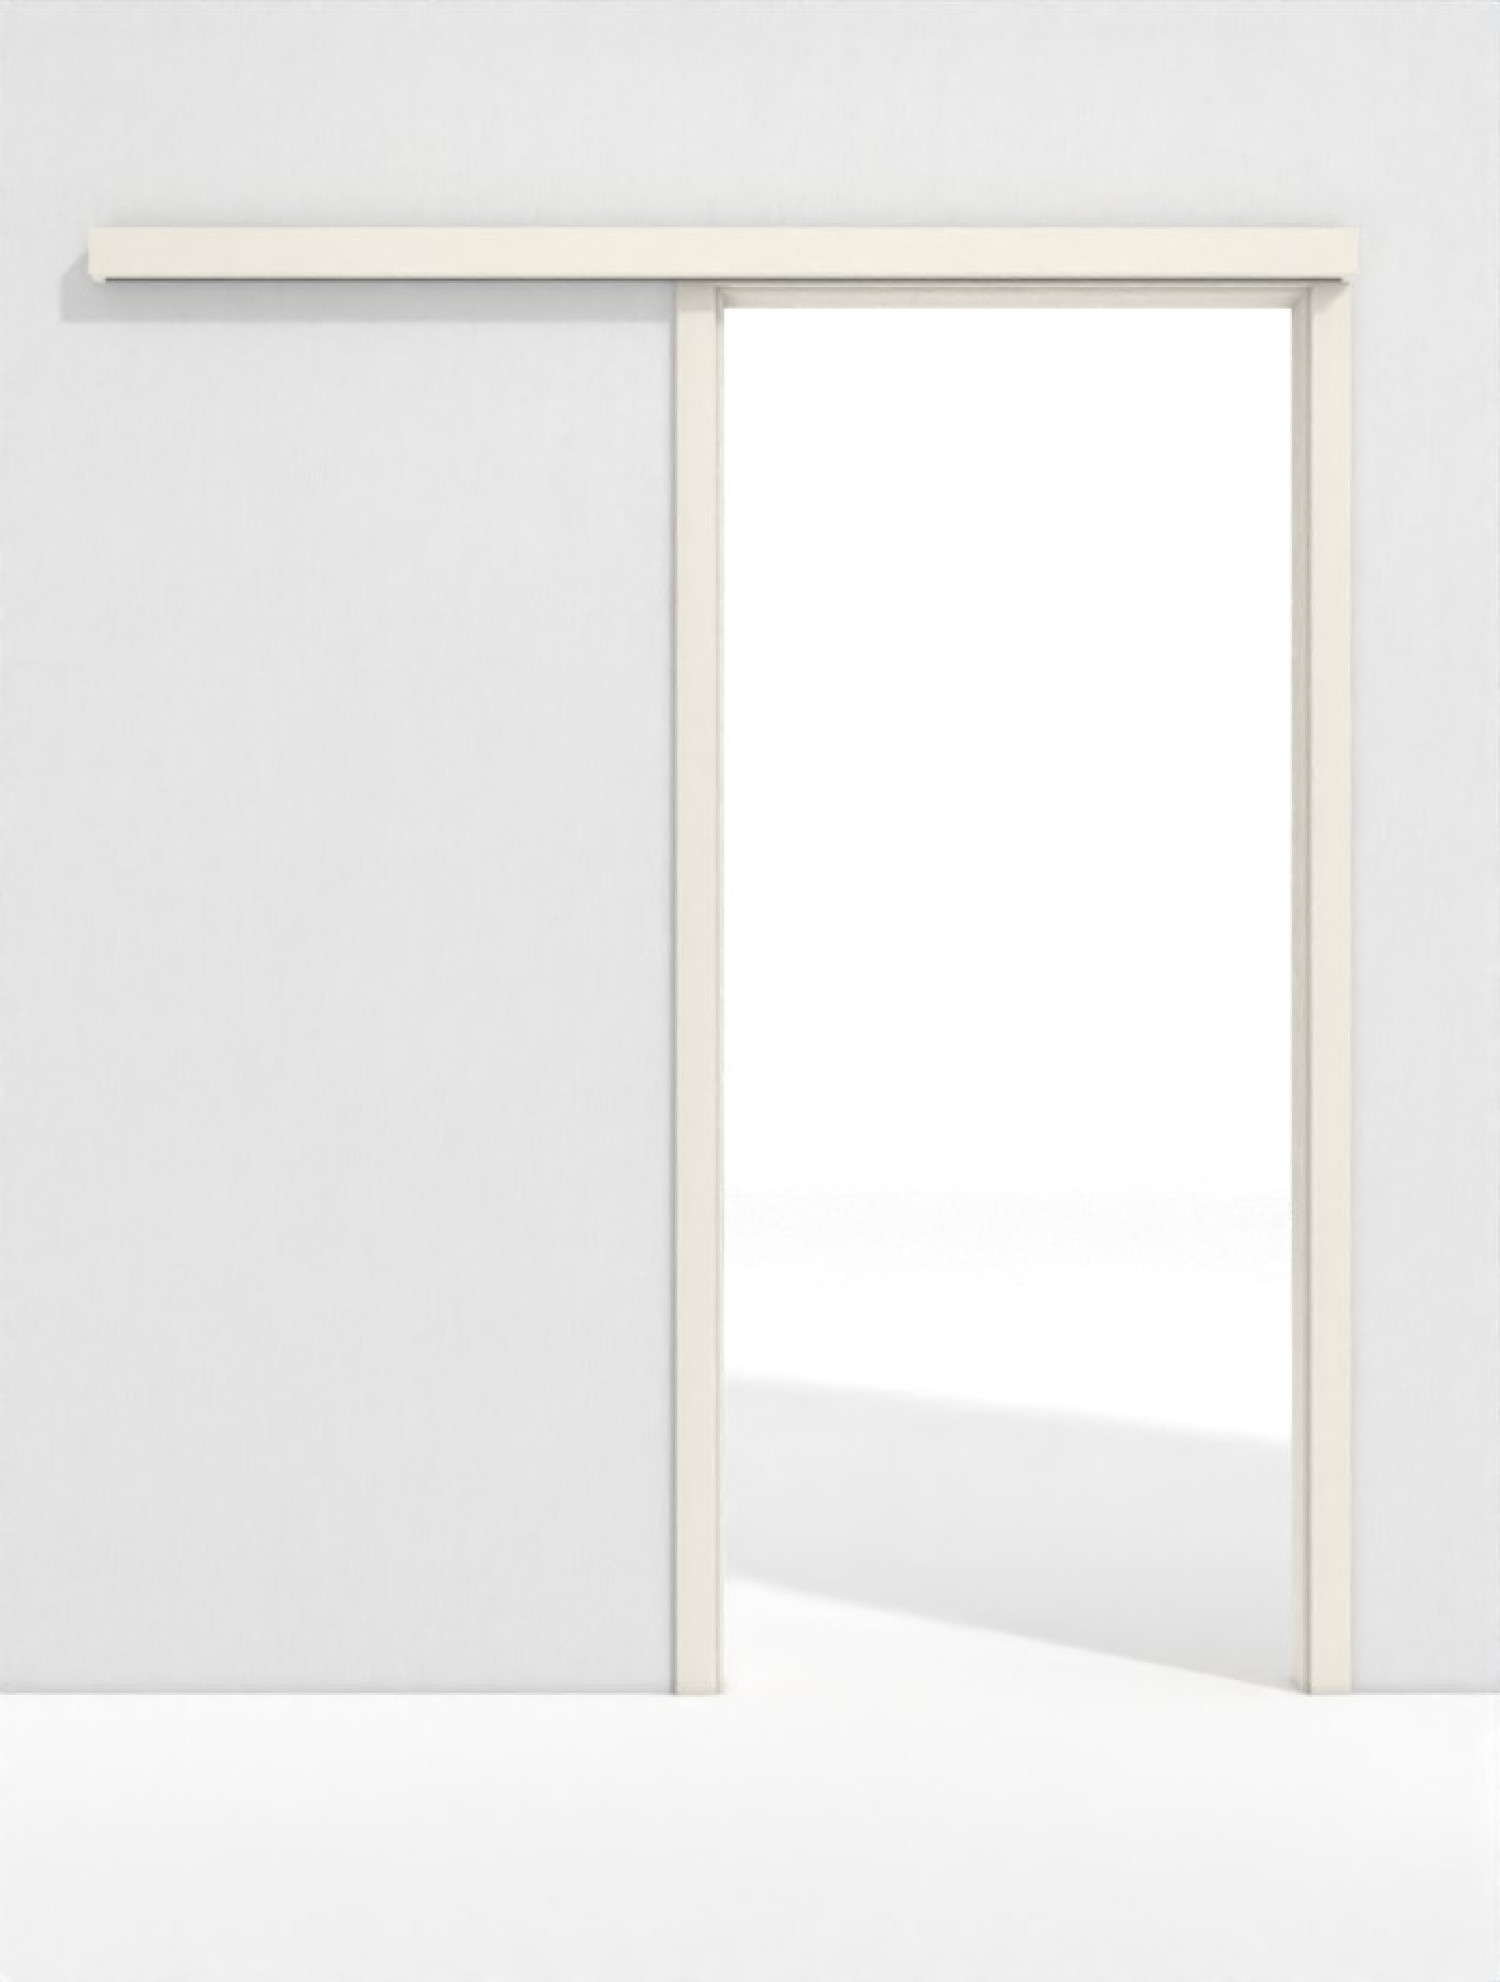 Frontbild von Schiebetürsystem PortaLit Klassik Weiß A223 vor der Wand laufend mit Zarge - Westag